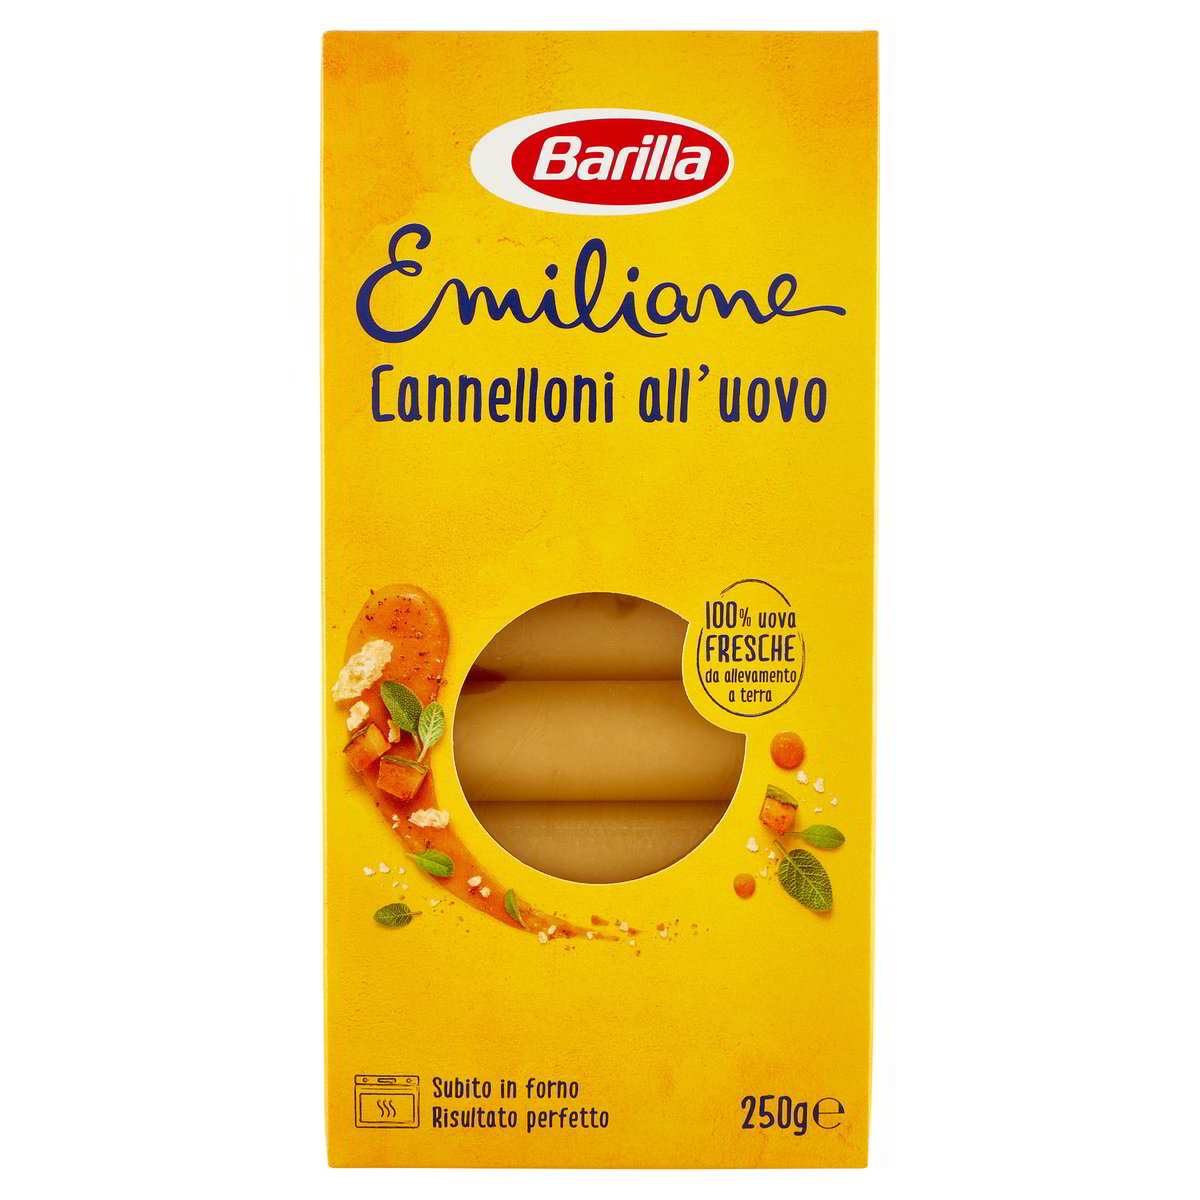 Cannelloni all'uovo Emiliane